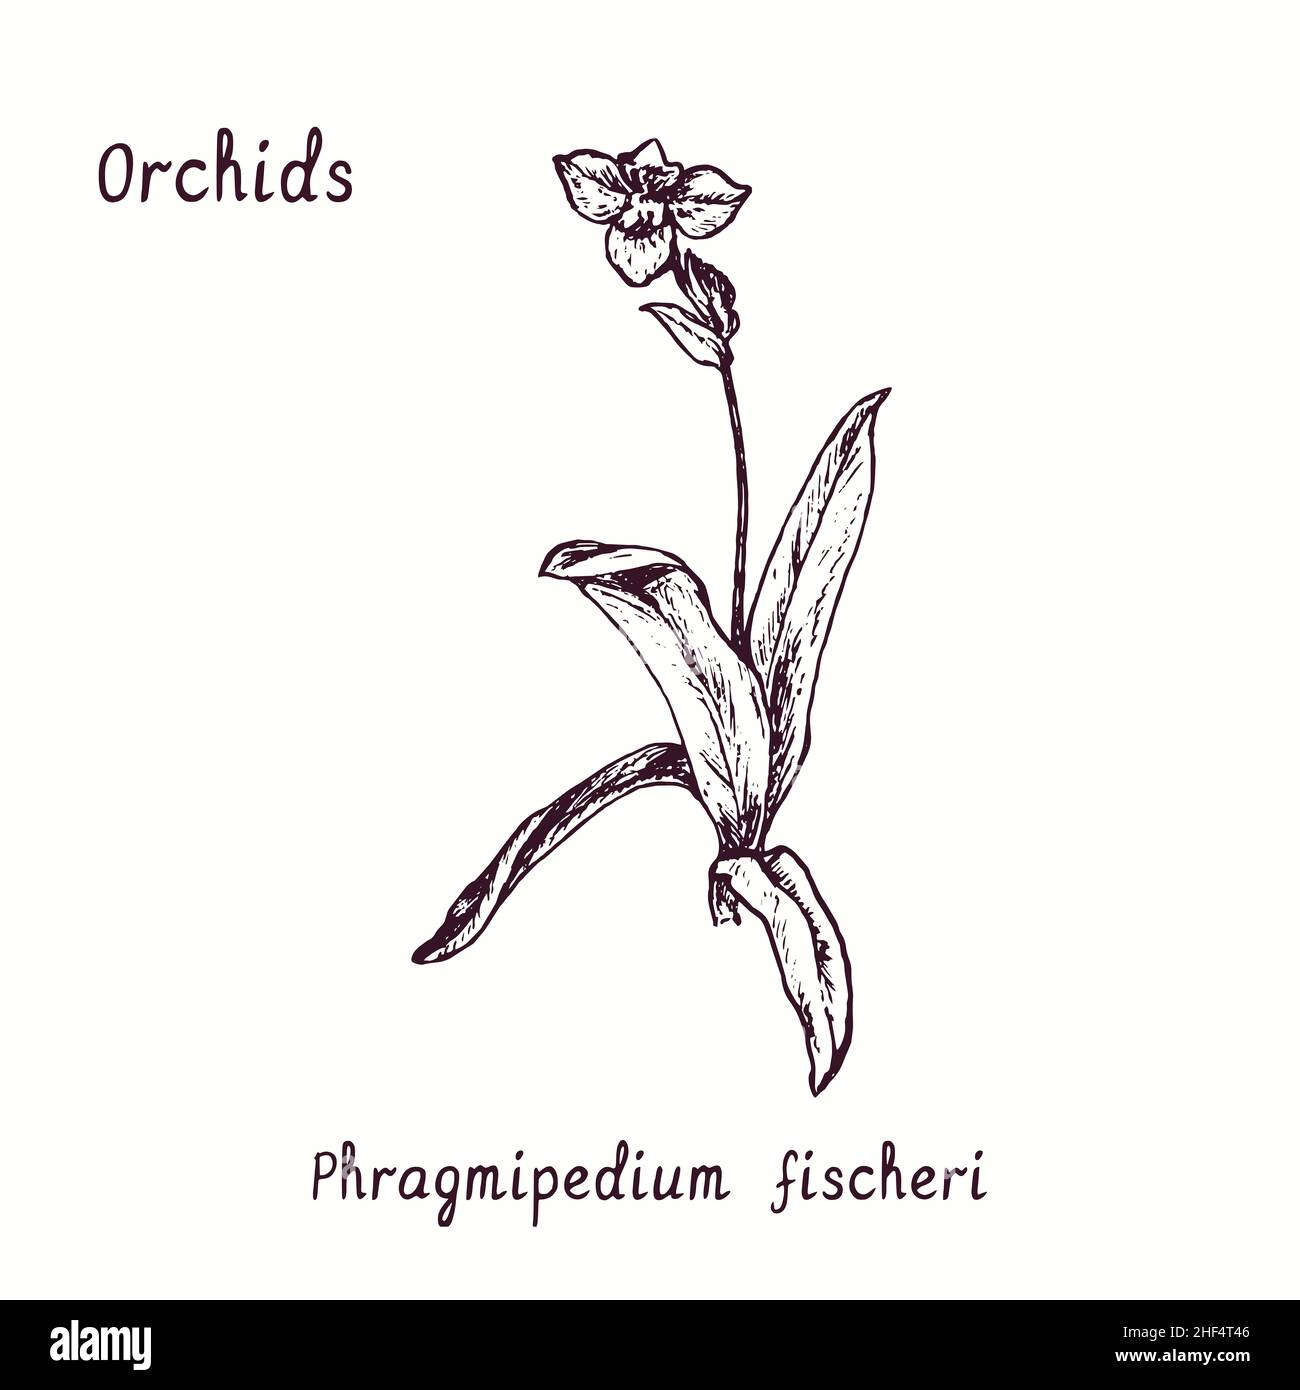 Collection de fleurs d'orchidées Phragmipedium fischeri.Dessin d'une boisée noire et blanche avec inscription. Banque D'Images